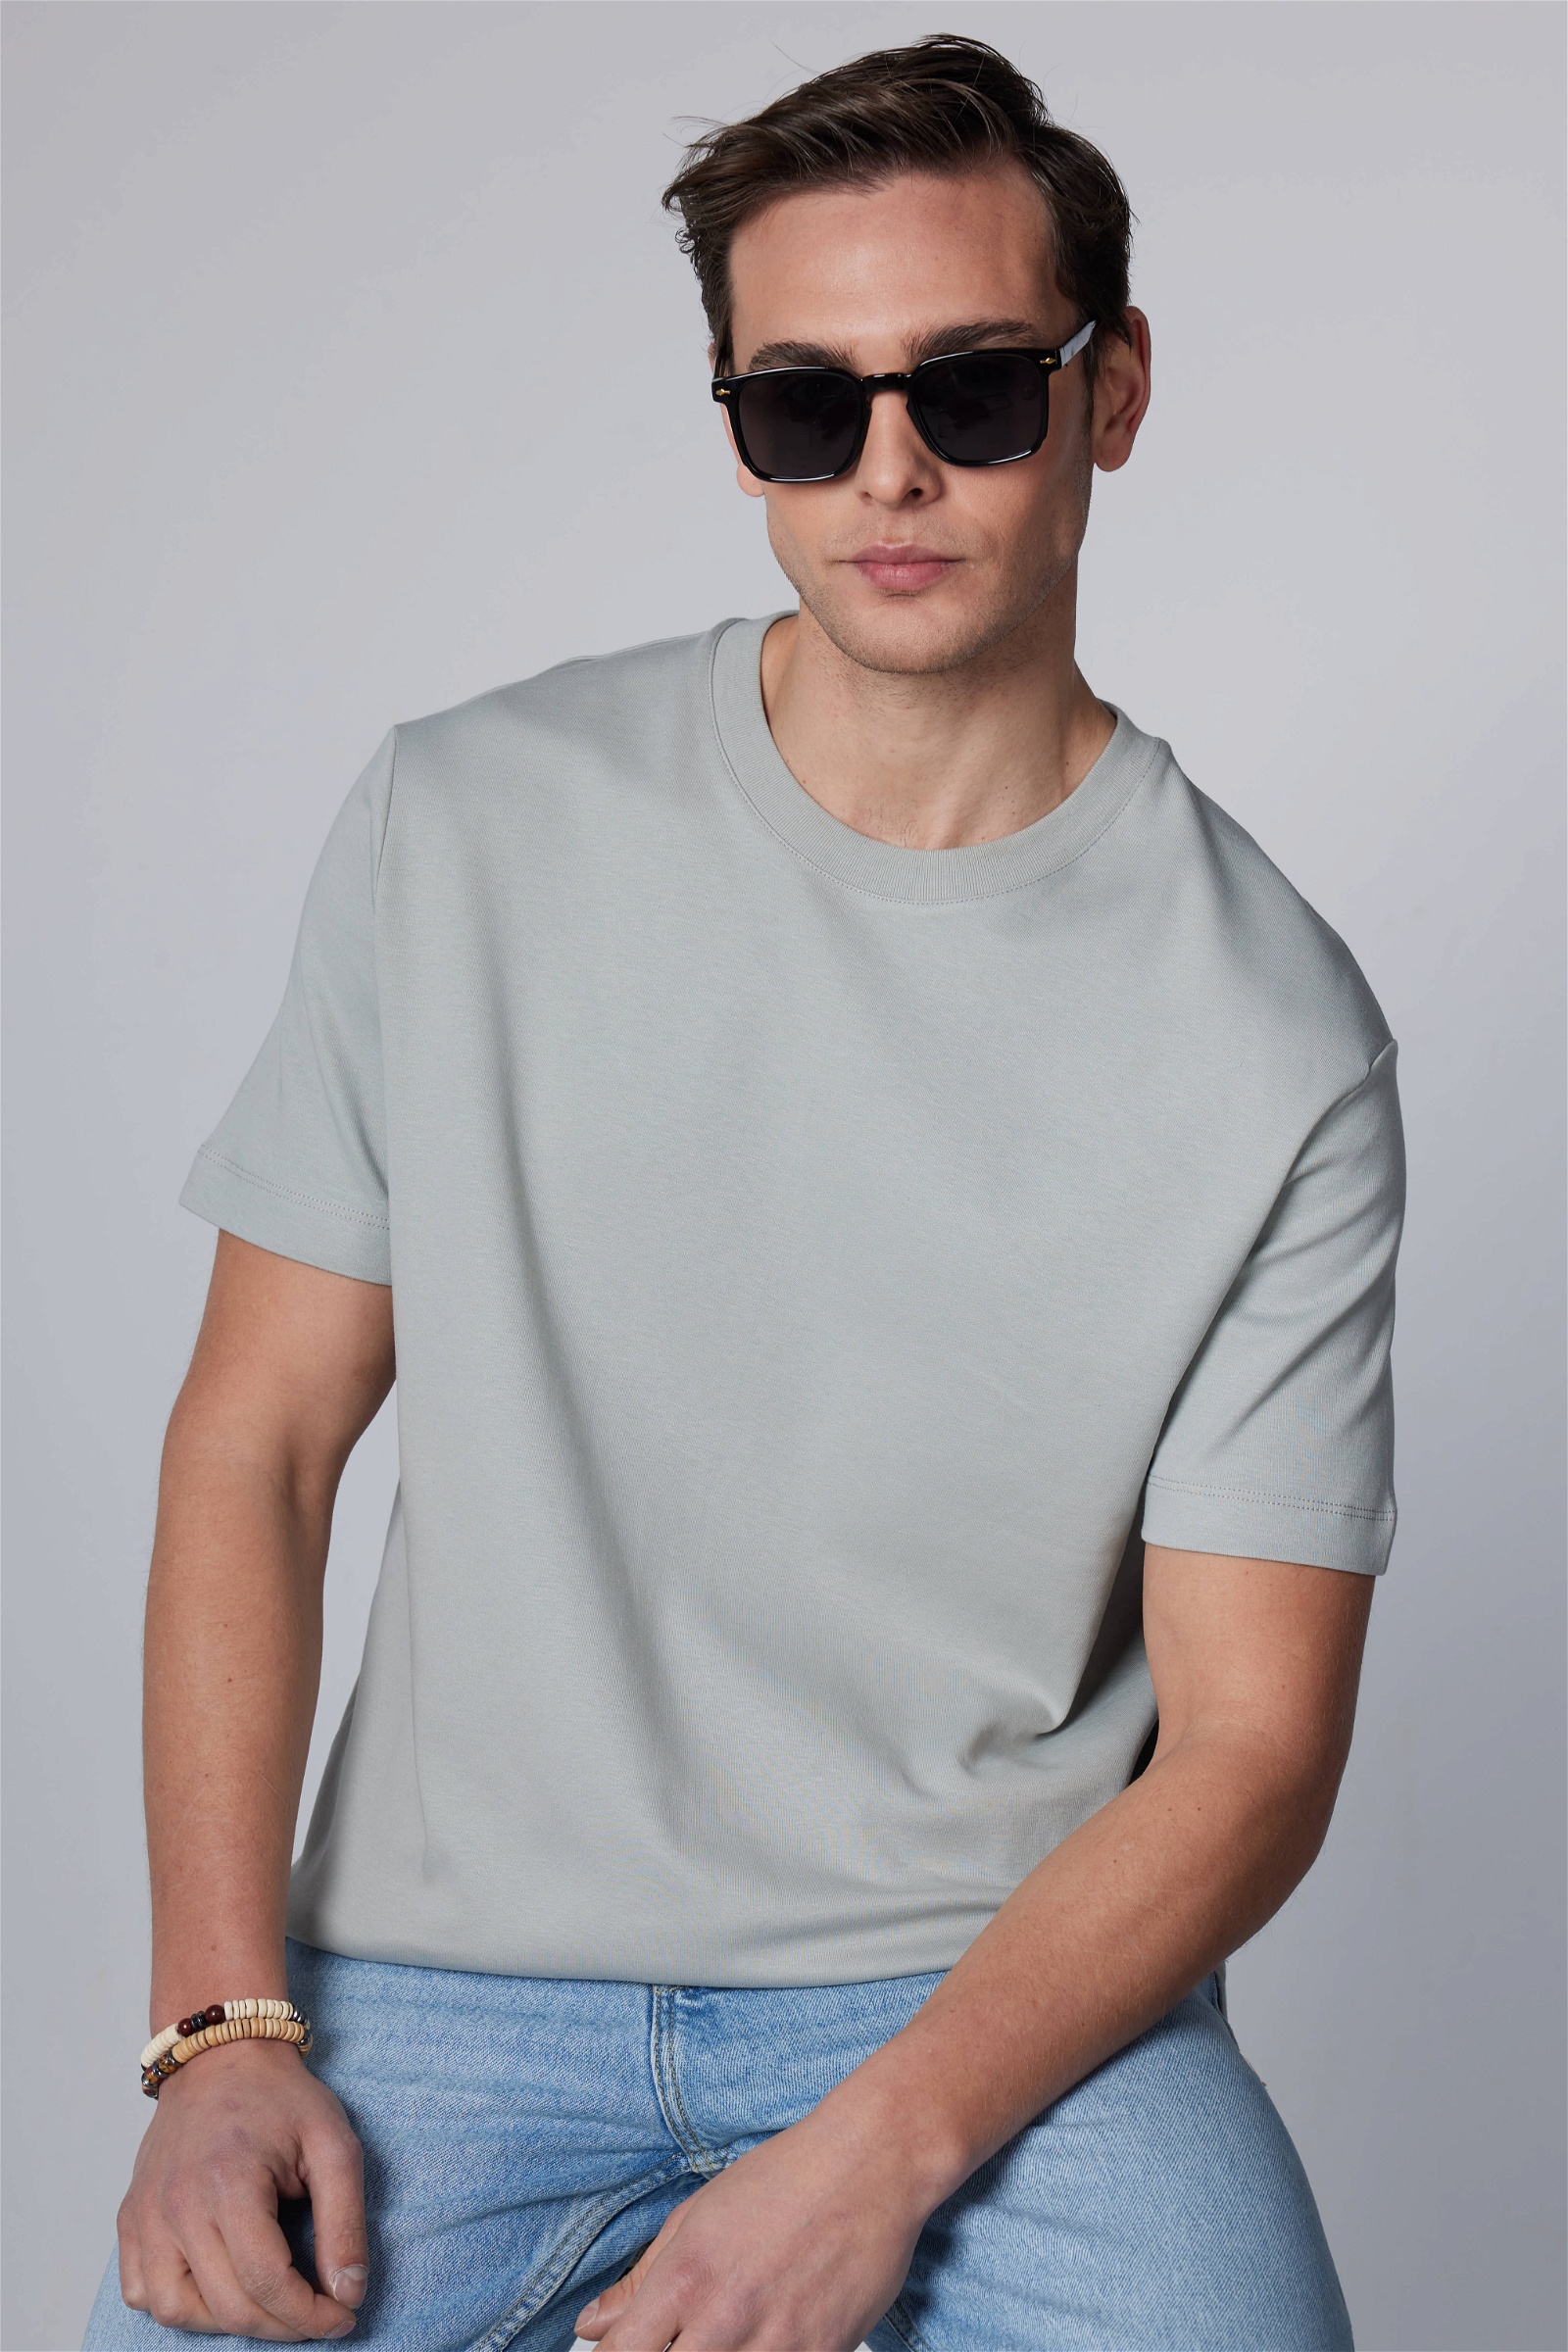 Plain Grey T-Shirt